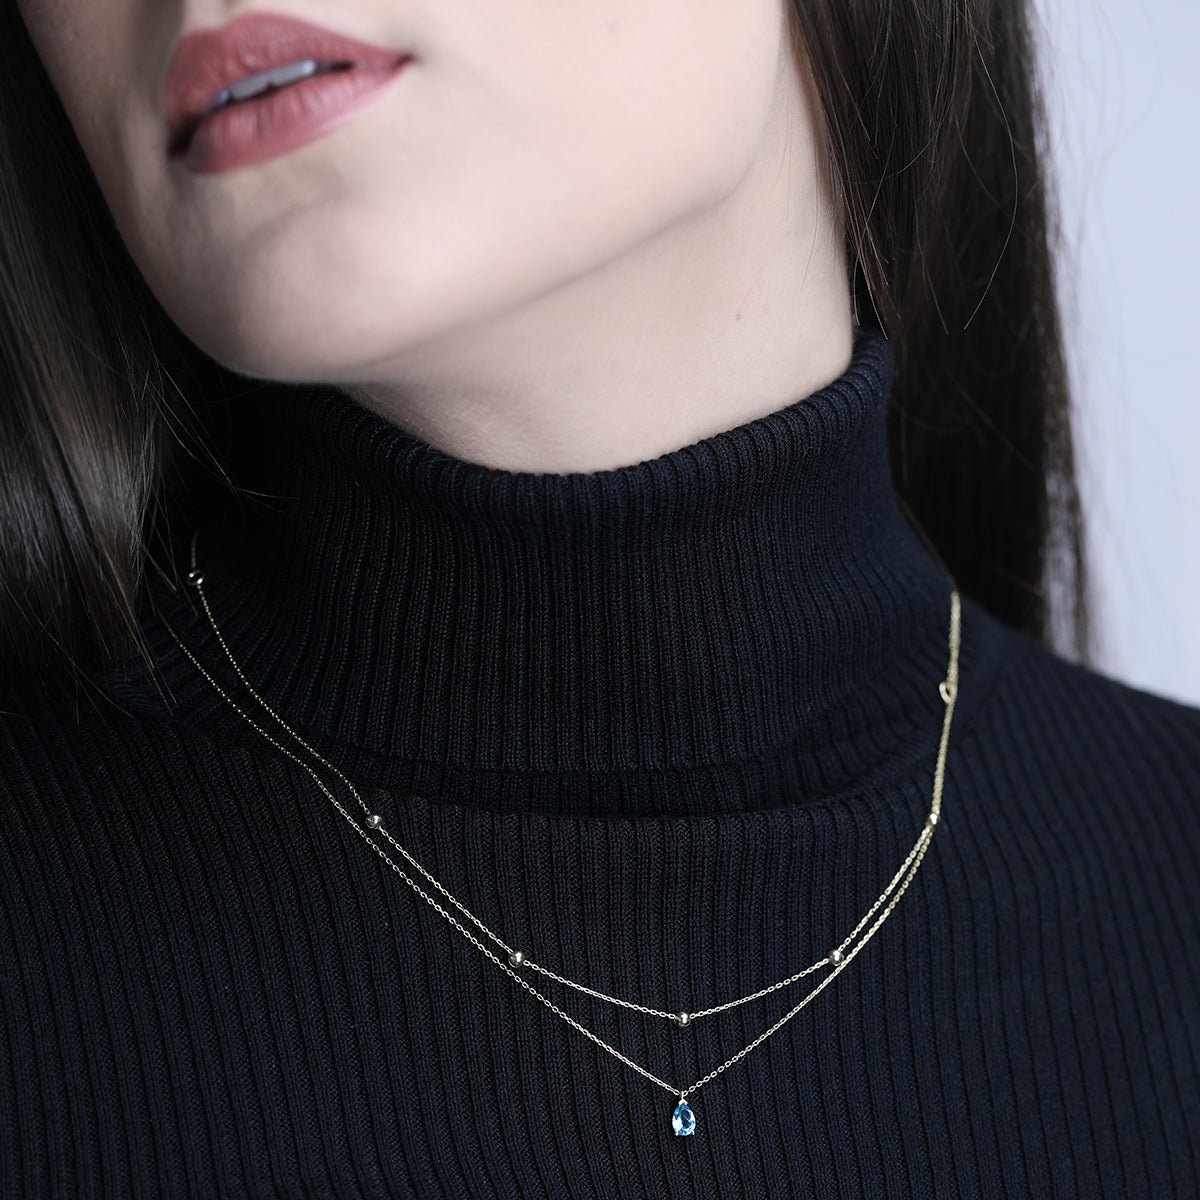 Blue Topaz Teardrop Pendant Necklace Necklaces Estella Collection #product_description# 17764 14k Birthstone Blue Gemstone #tag4# #tag5# #tag6# #tag7# #tag8# #tag9# #tag10#